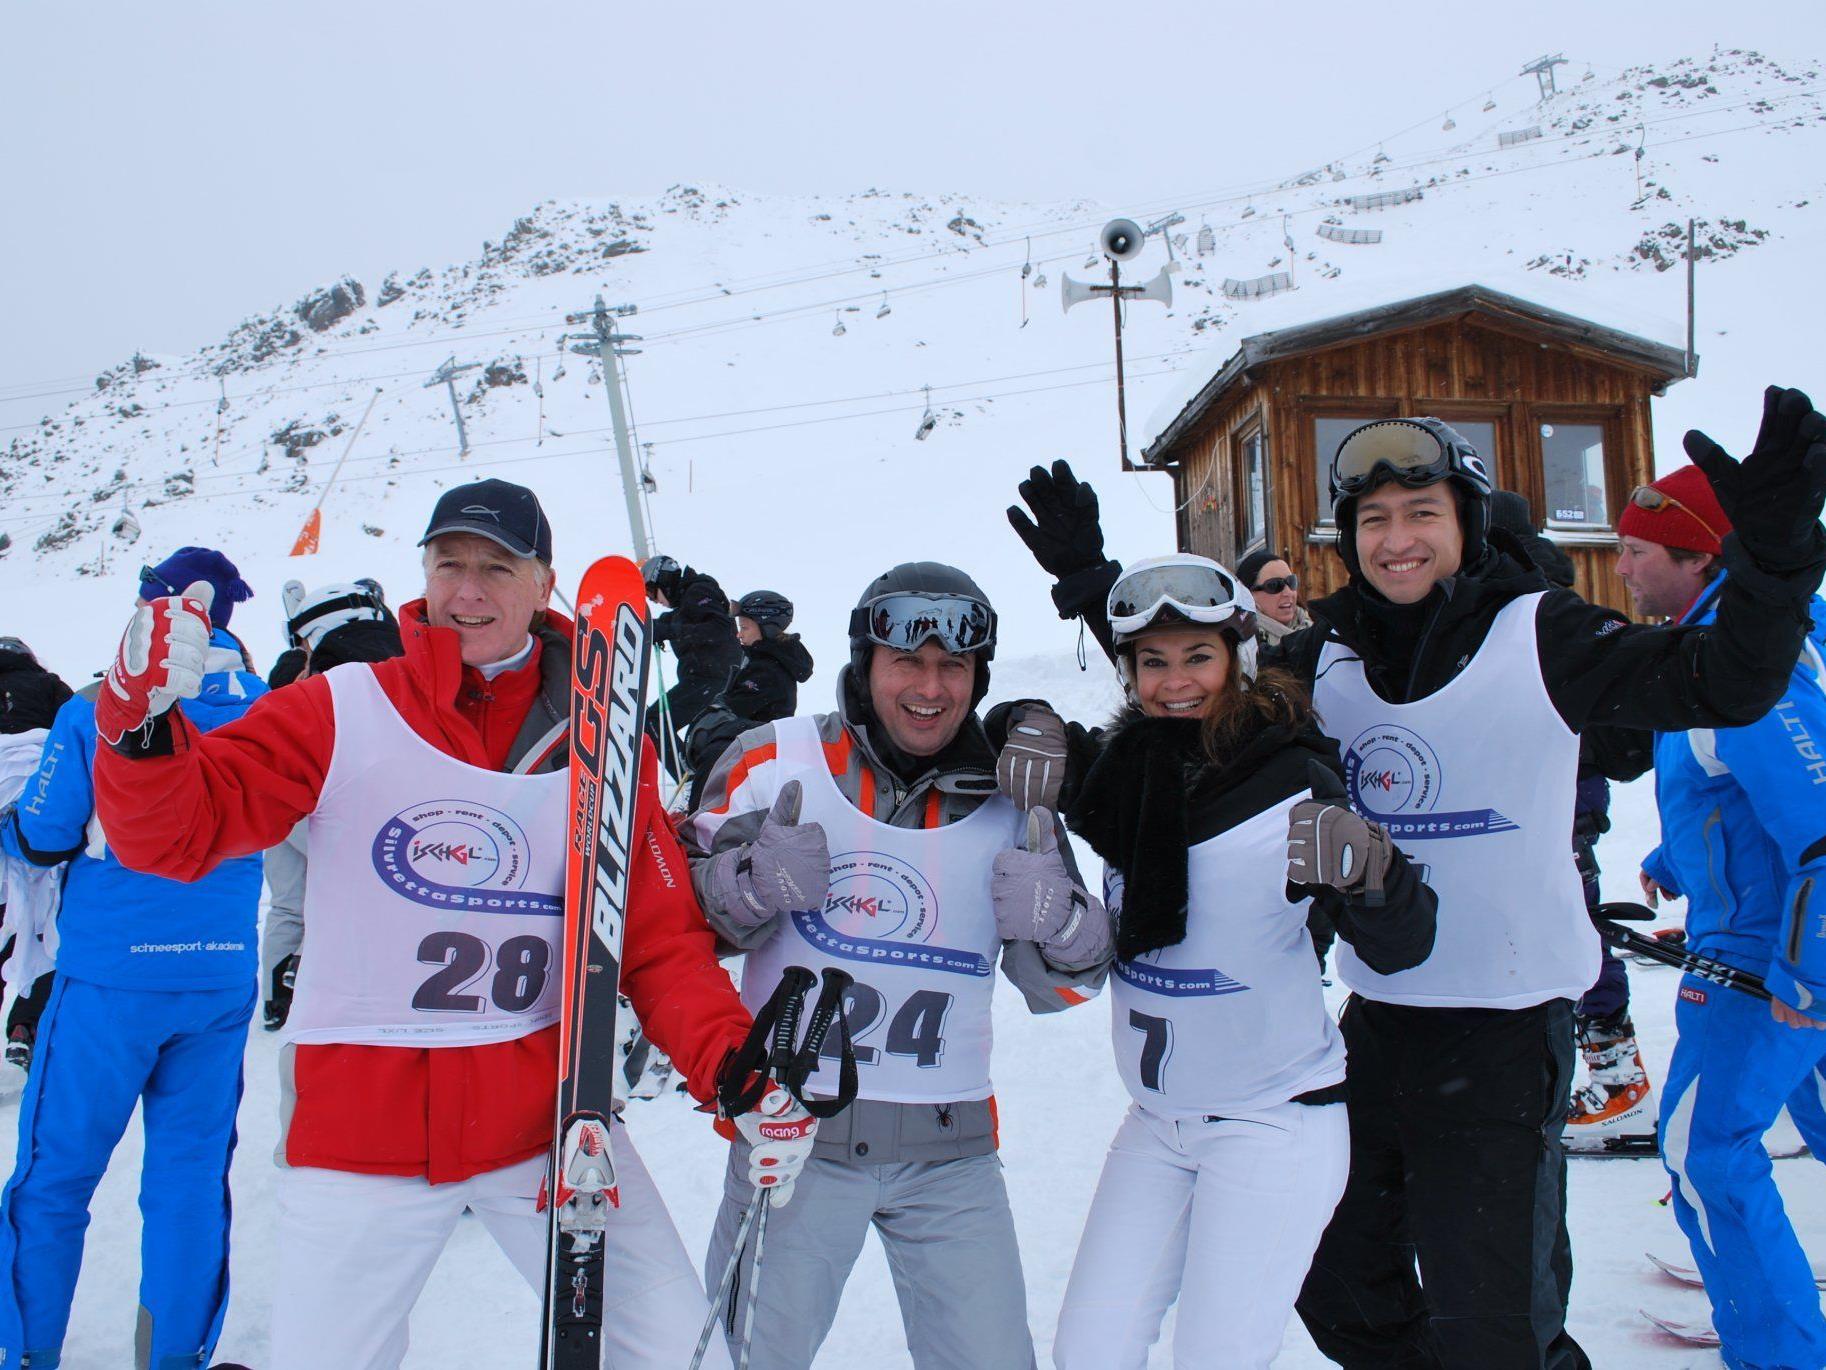 Einen Profi-Skikurs im ****Alpen-Avantgarde-Hotel Solaria in Ischgl vom 27. November bis 2. Dezember 2011 gewinnen!